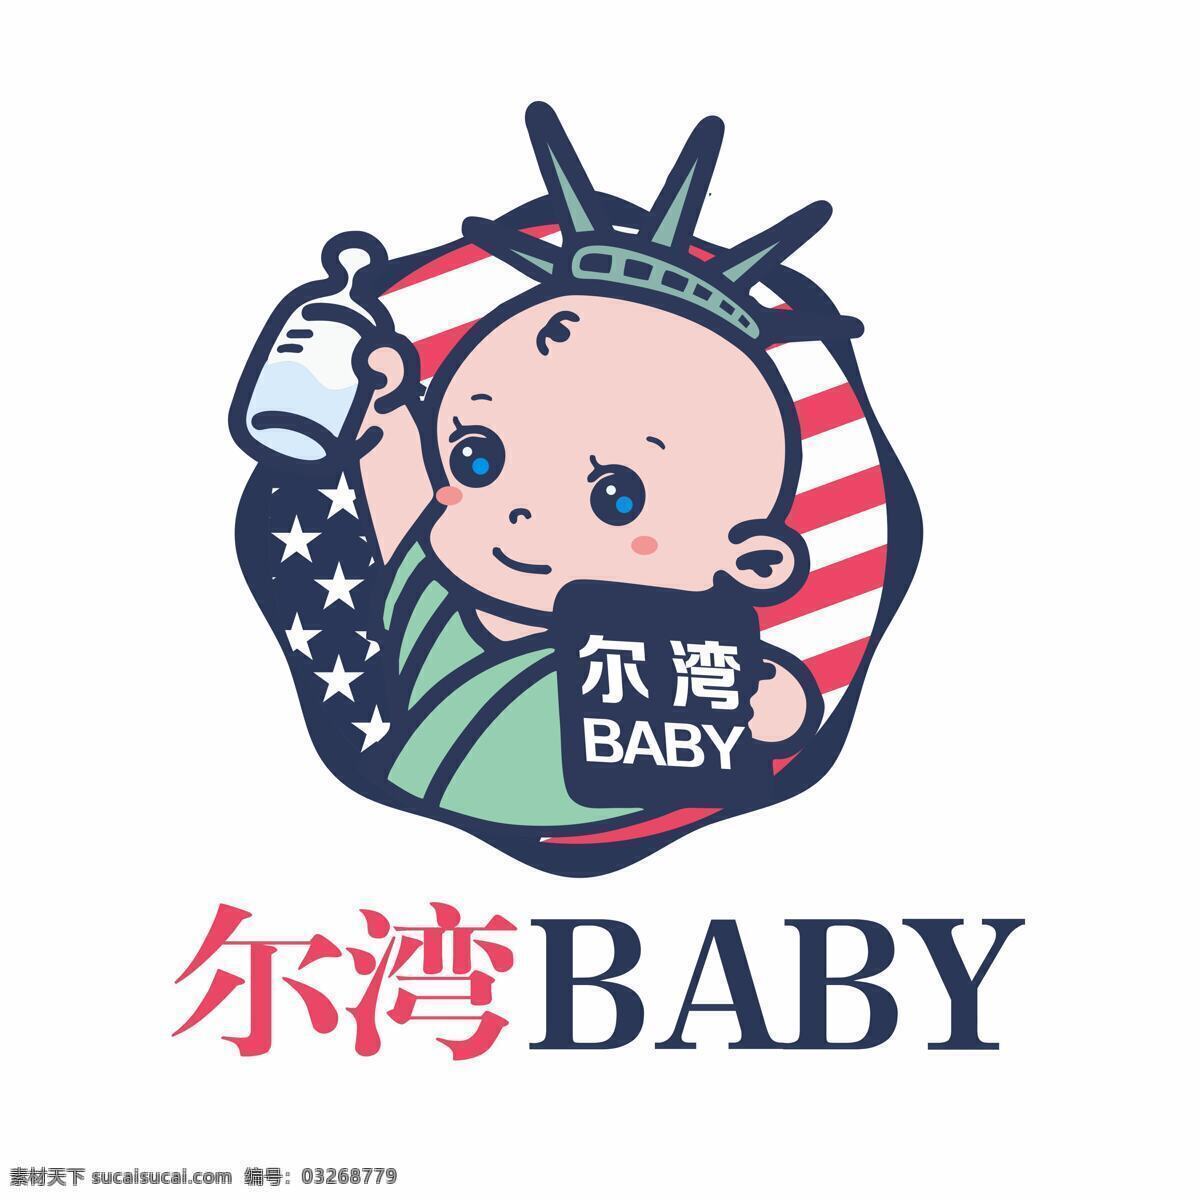 母婴 logo 模板 孕婴 商标 baby 婴儿